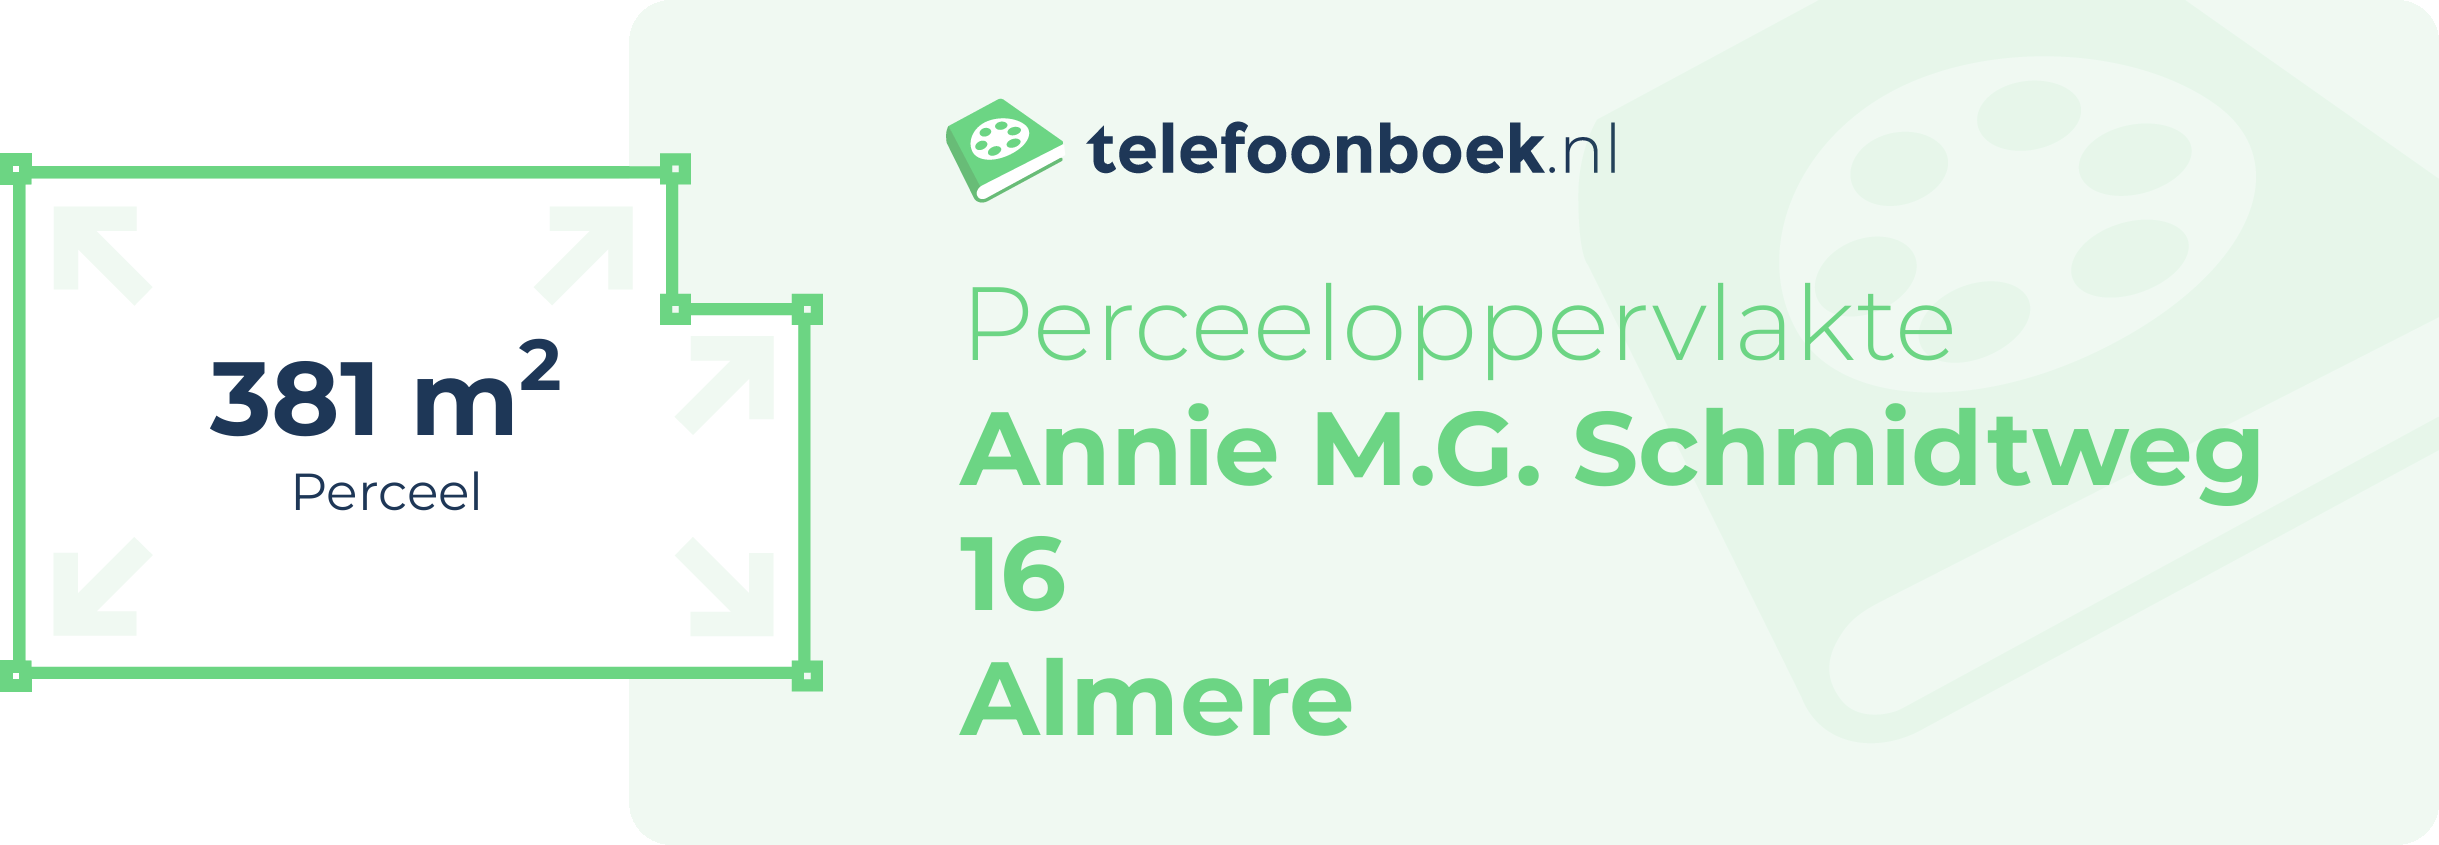 Perceeloppervlakte Annie M.G. Schmidtweg 16 Almere